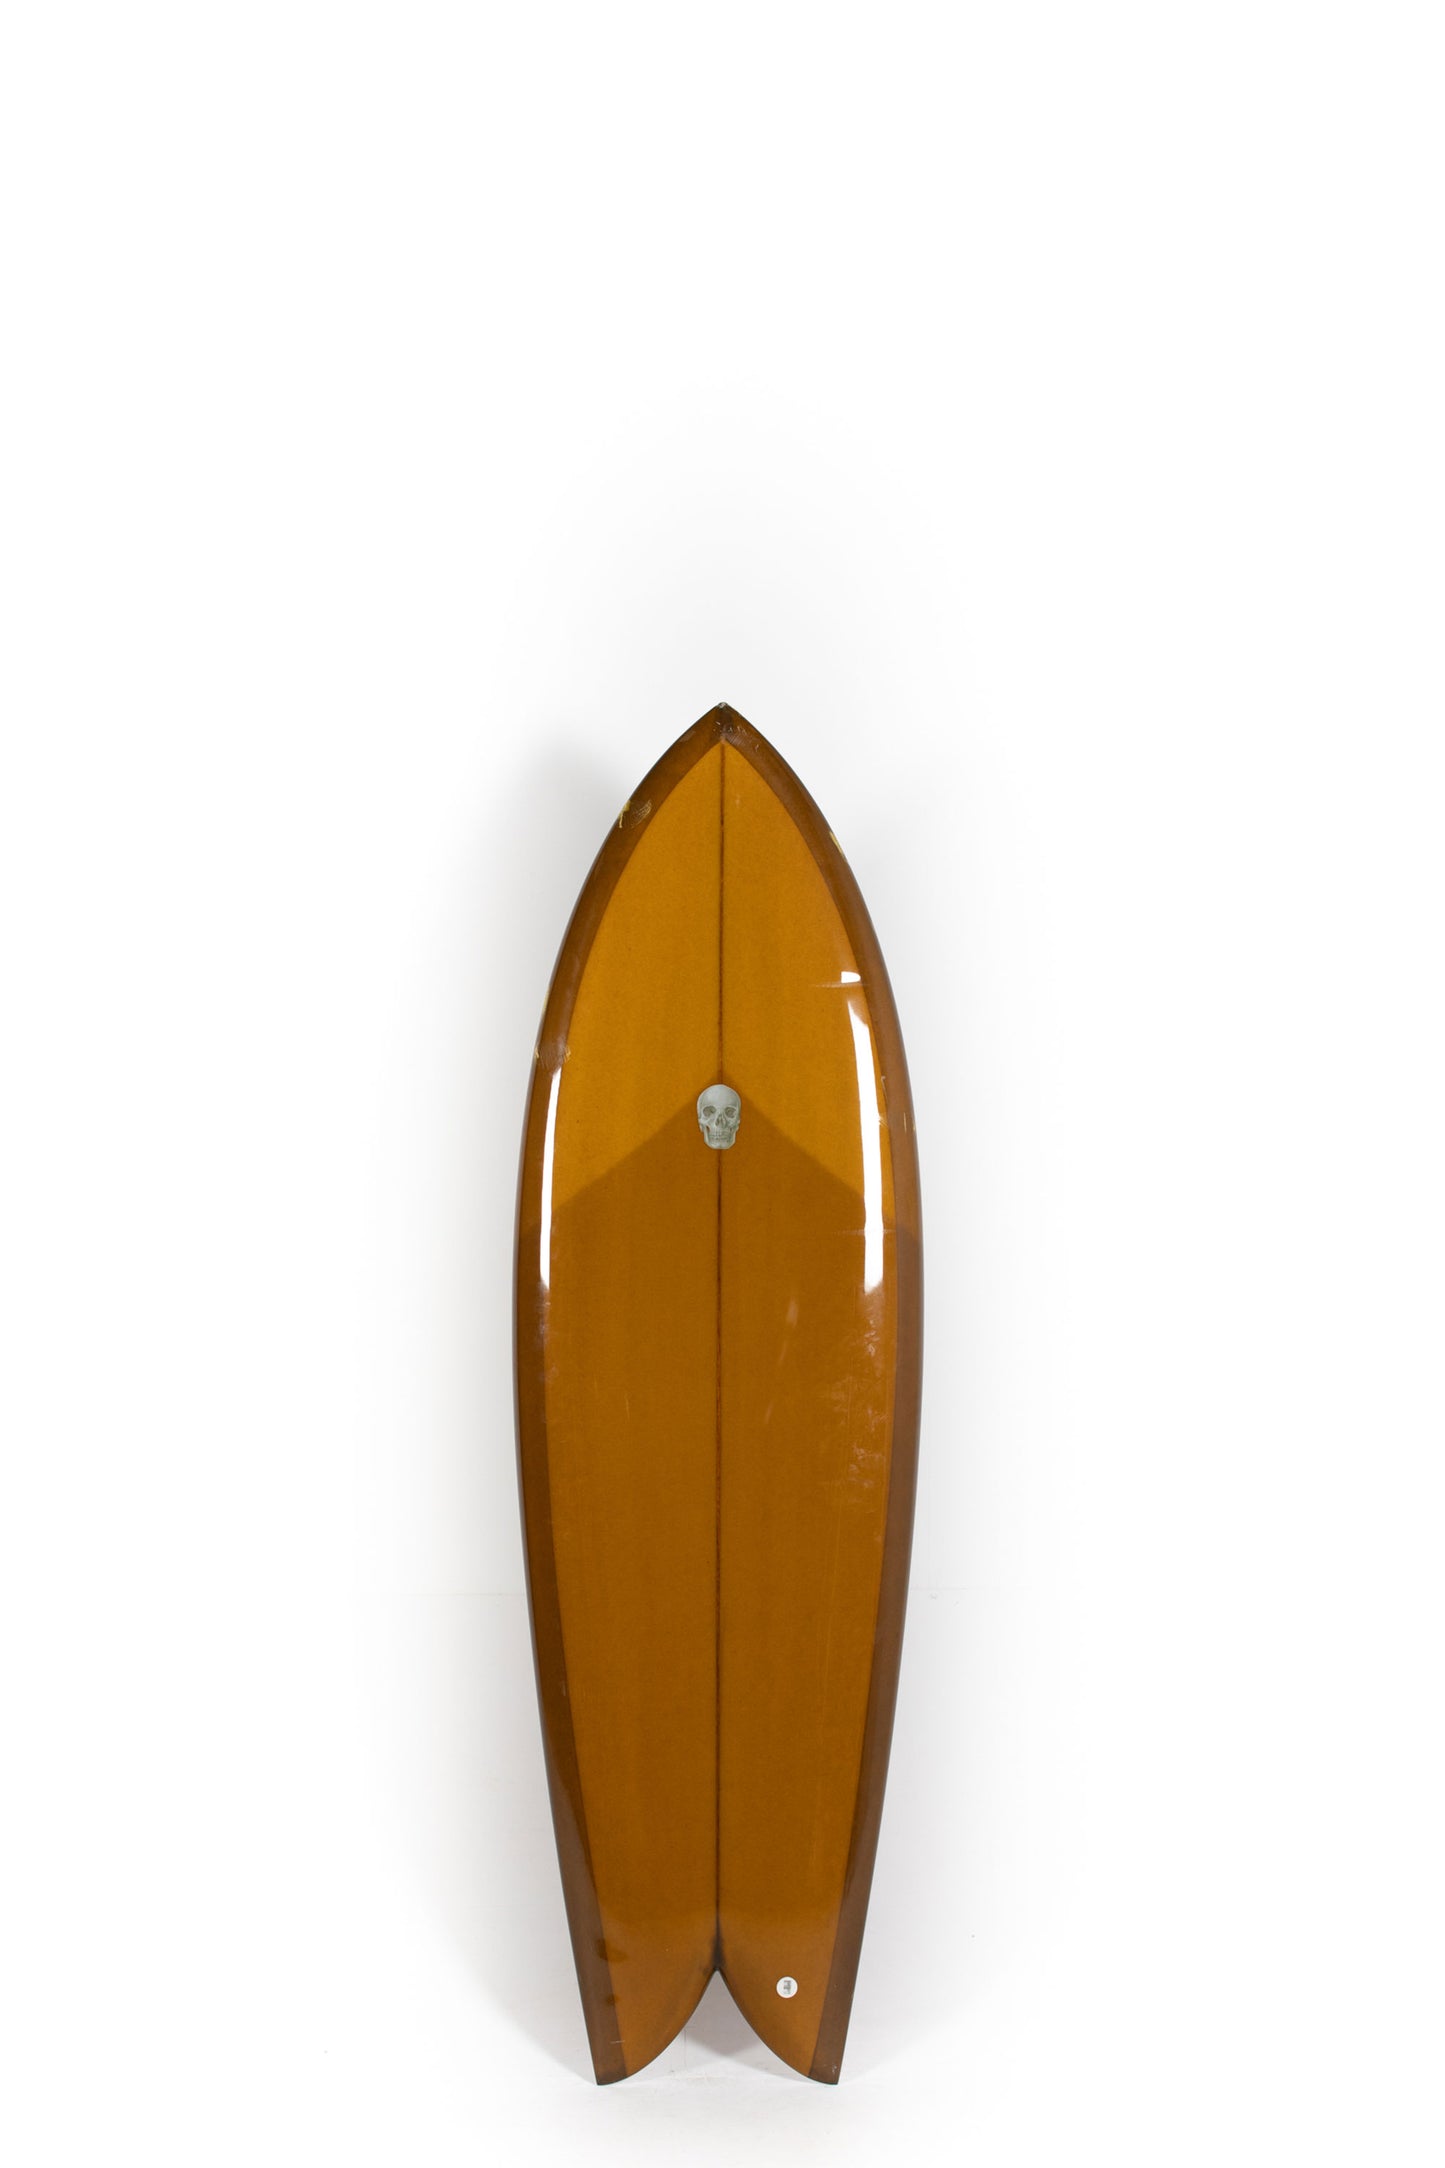 Pukas Surf Shop - Christenson Surfboards - CHRIS FISH - 6'0" x 21 5/8 x 2 5/8 - CX05036